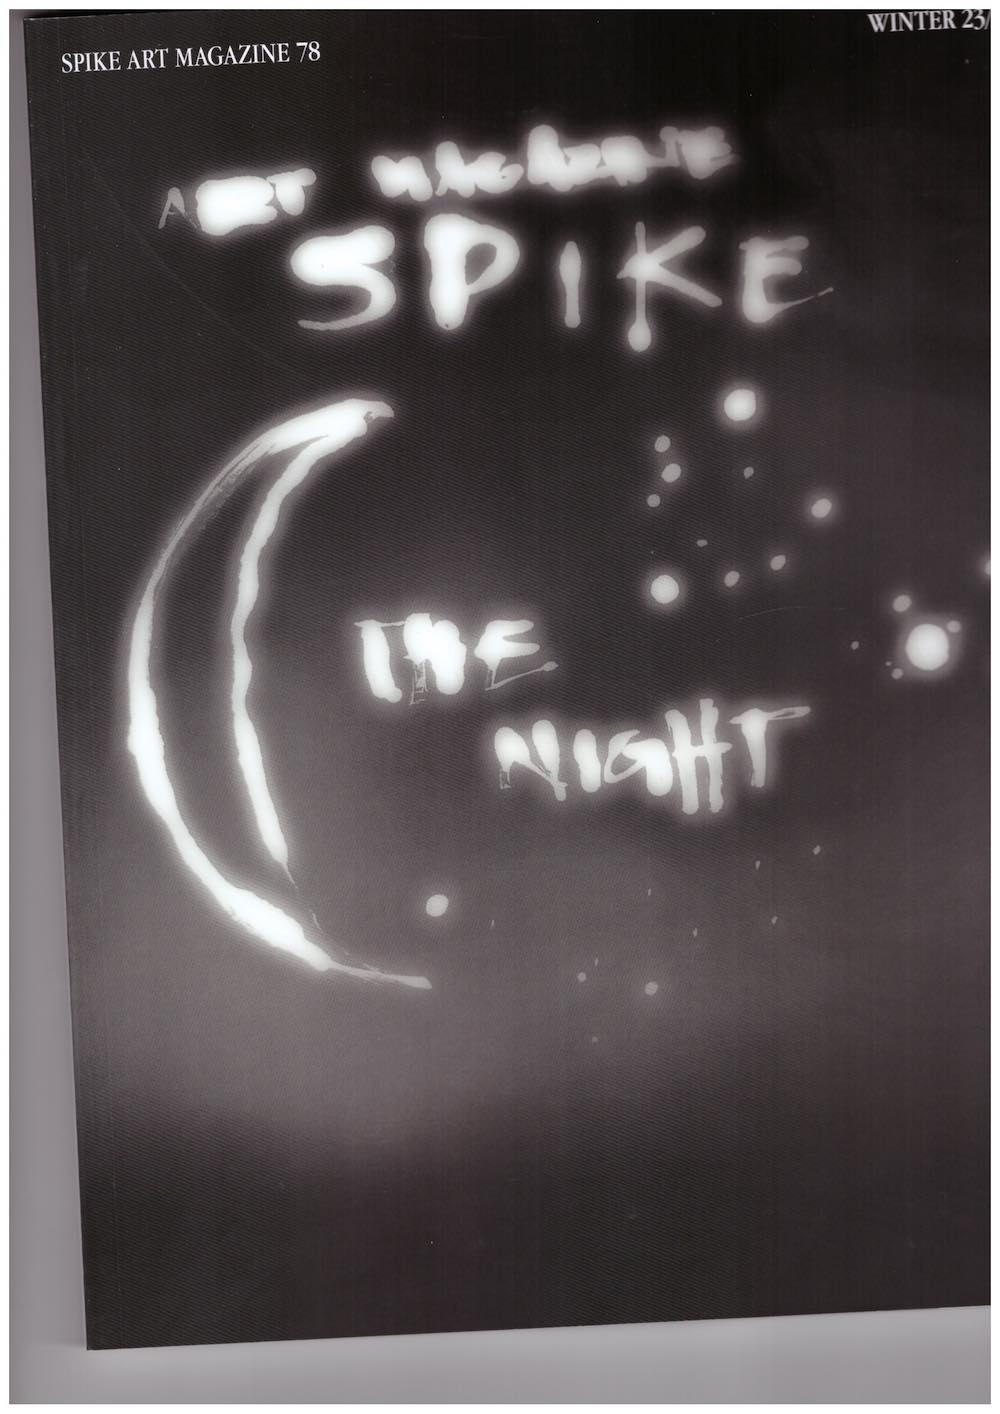 VITORELLI, Rita (ed.) - Spike #78 – The Night